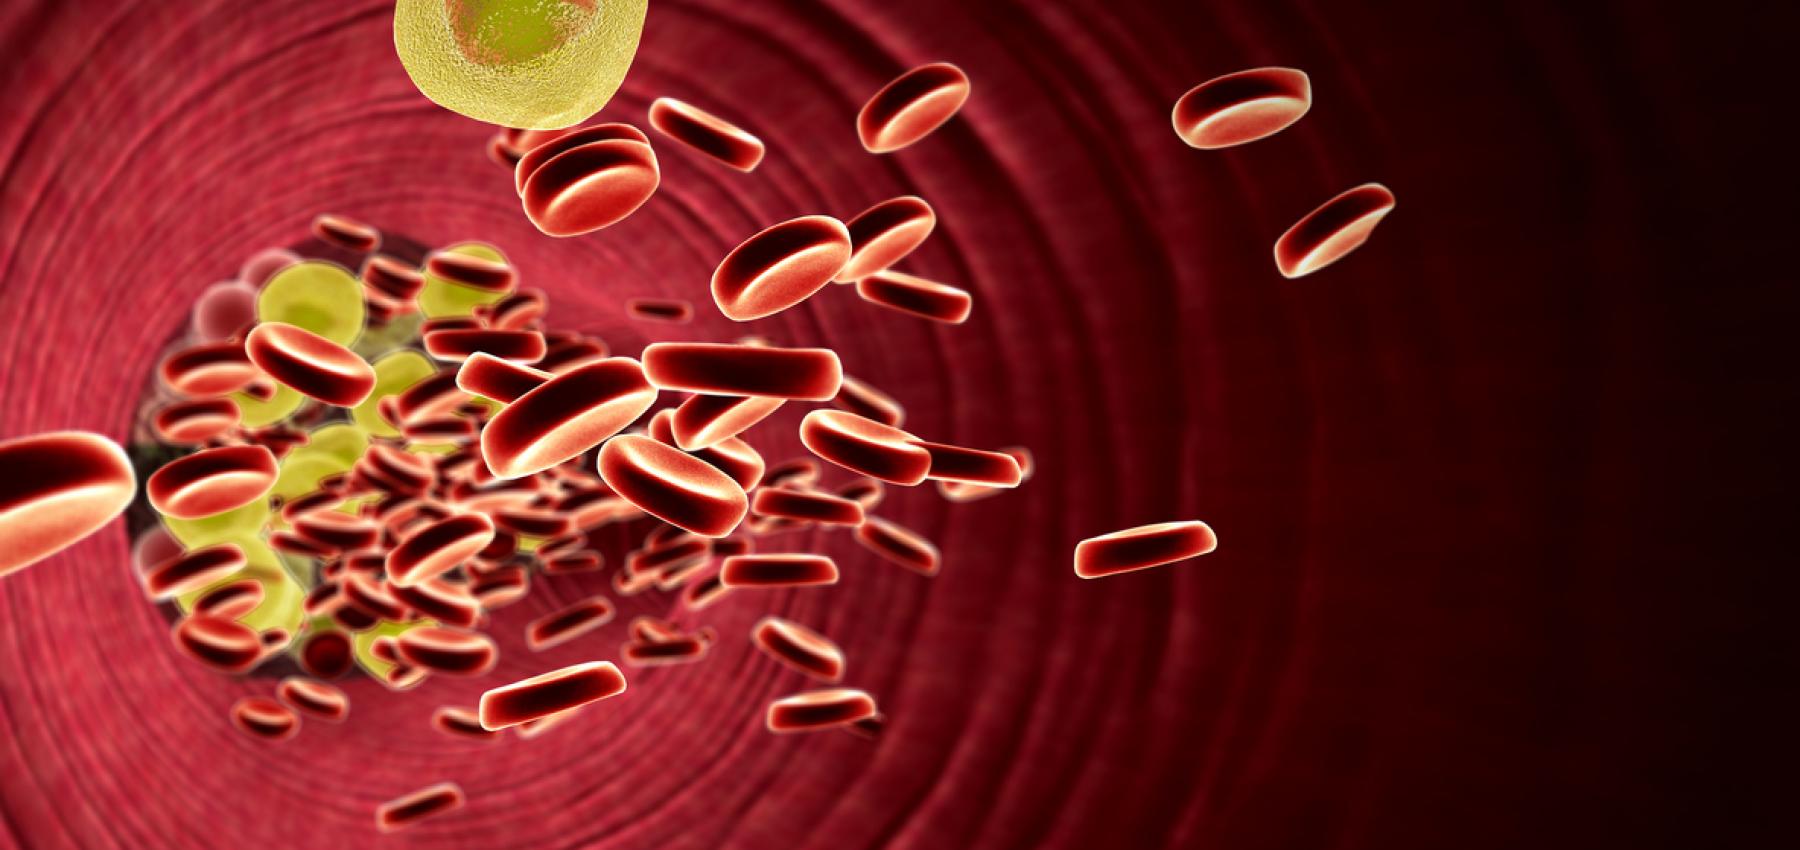 7 علاجات طبيعية لارتفاع نسبة الكوليسترول في الدم